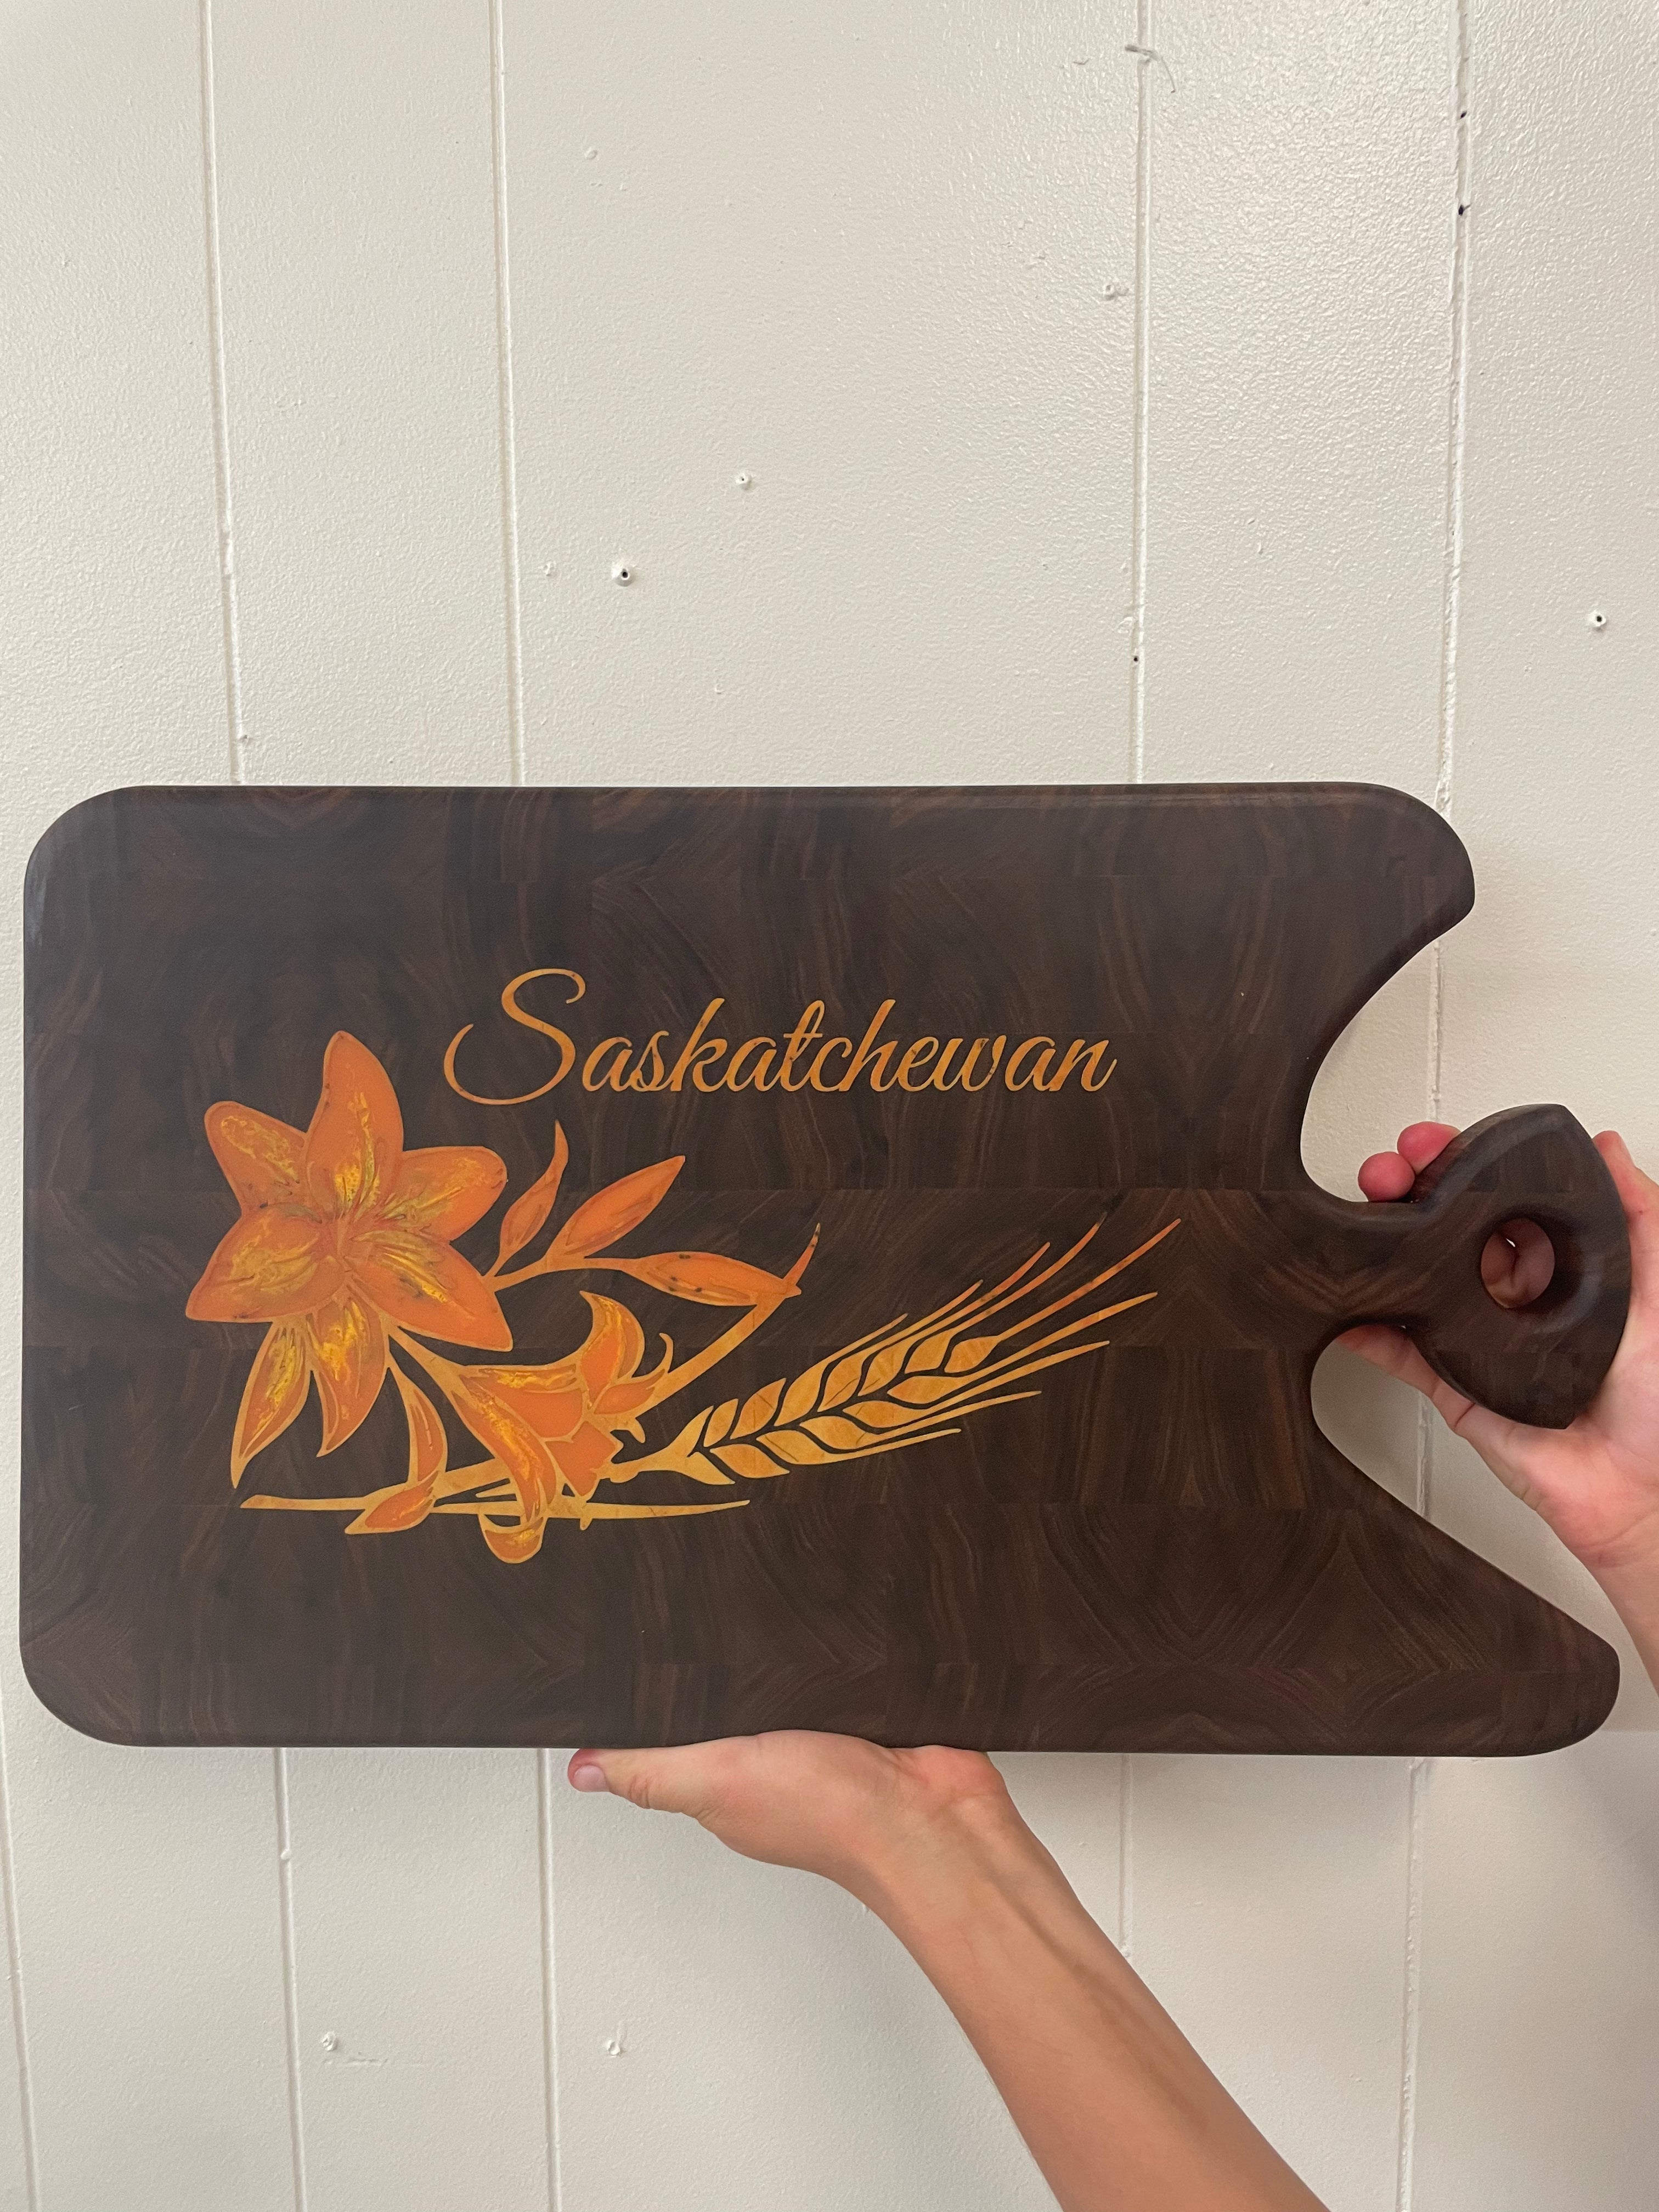 Saskatchewan Cheese board